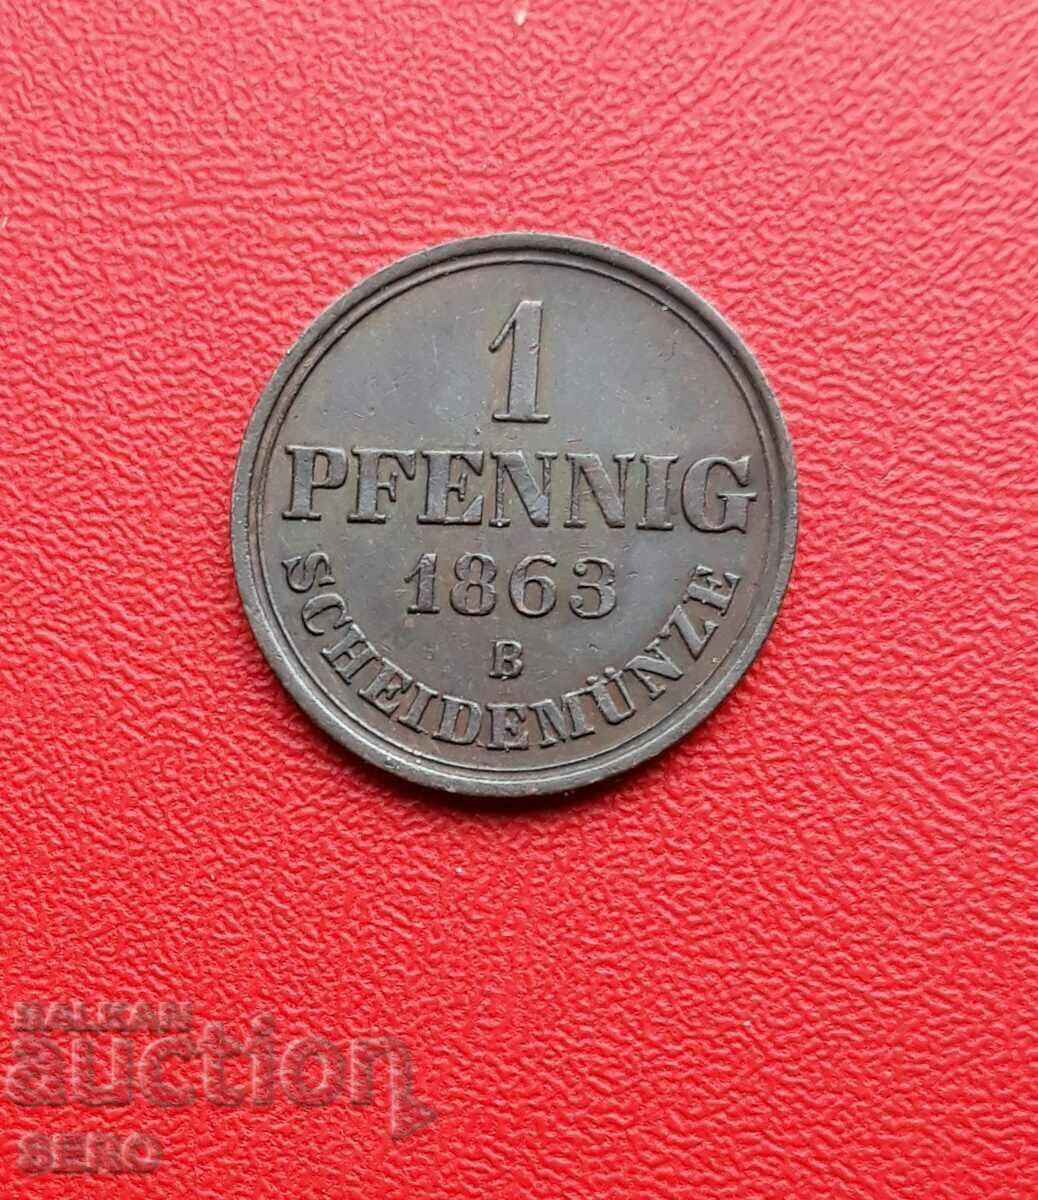 Γερμανία-Ανόβερο-1 pfennig 1863-ext